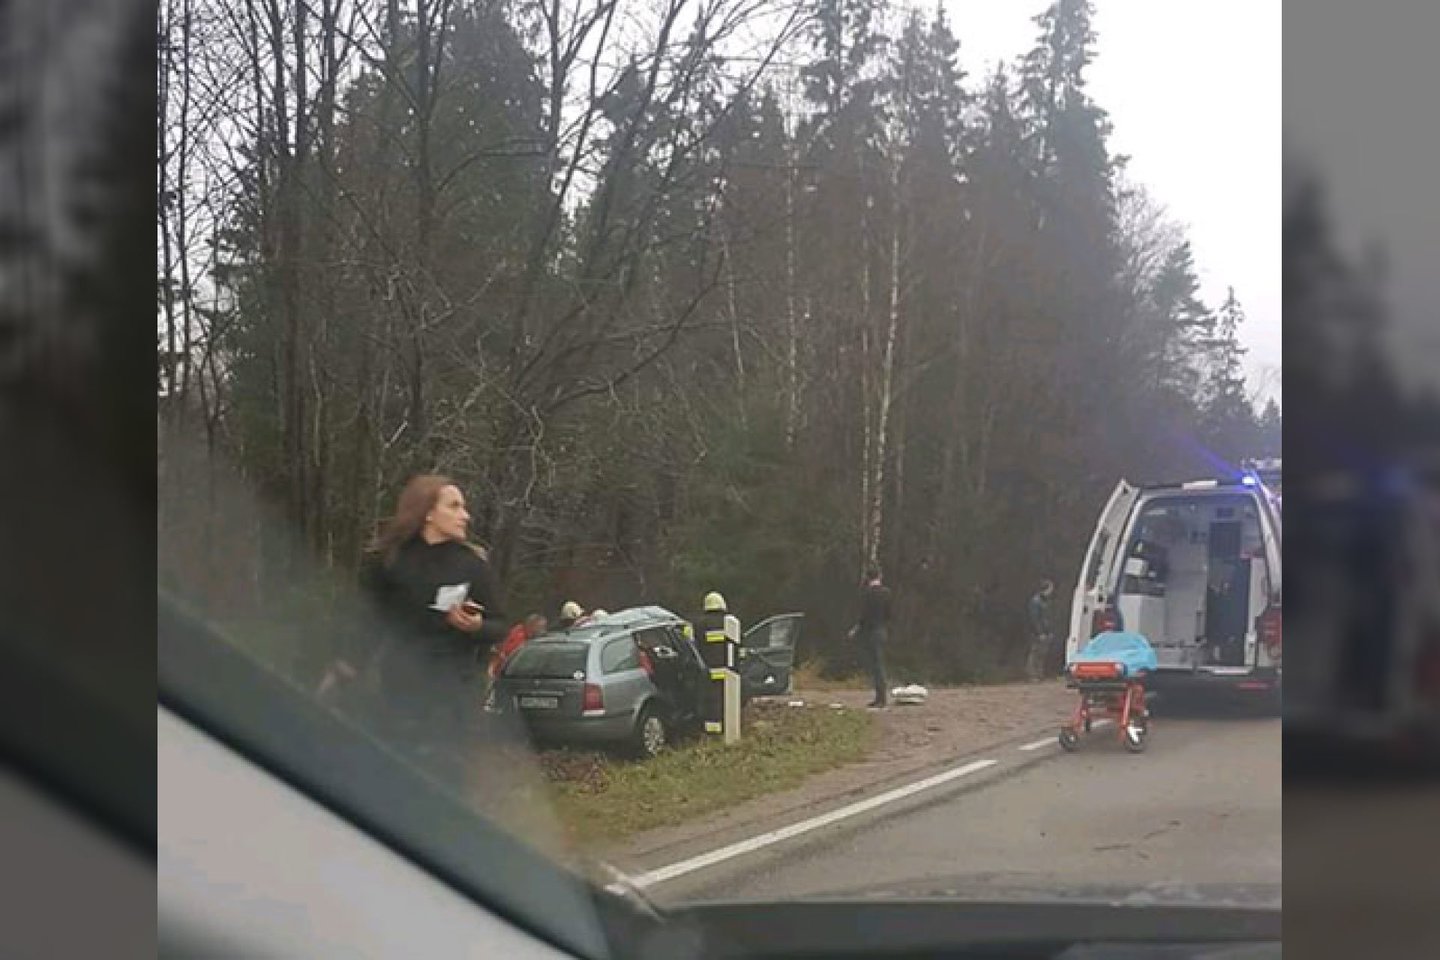  Klaipėdos r. automobilis rėžėsi į medį, vairuotoją vadavo ugniagesiai.<br> Facebook/Pranešk, kur policija Plungės rajone/Valdo J. nuotr.